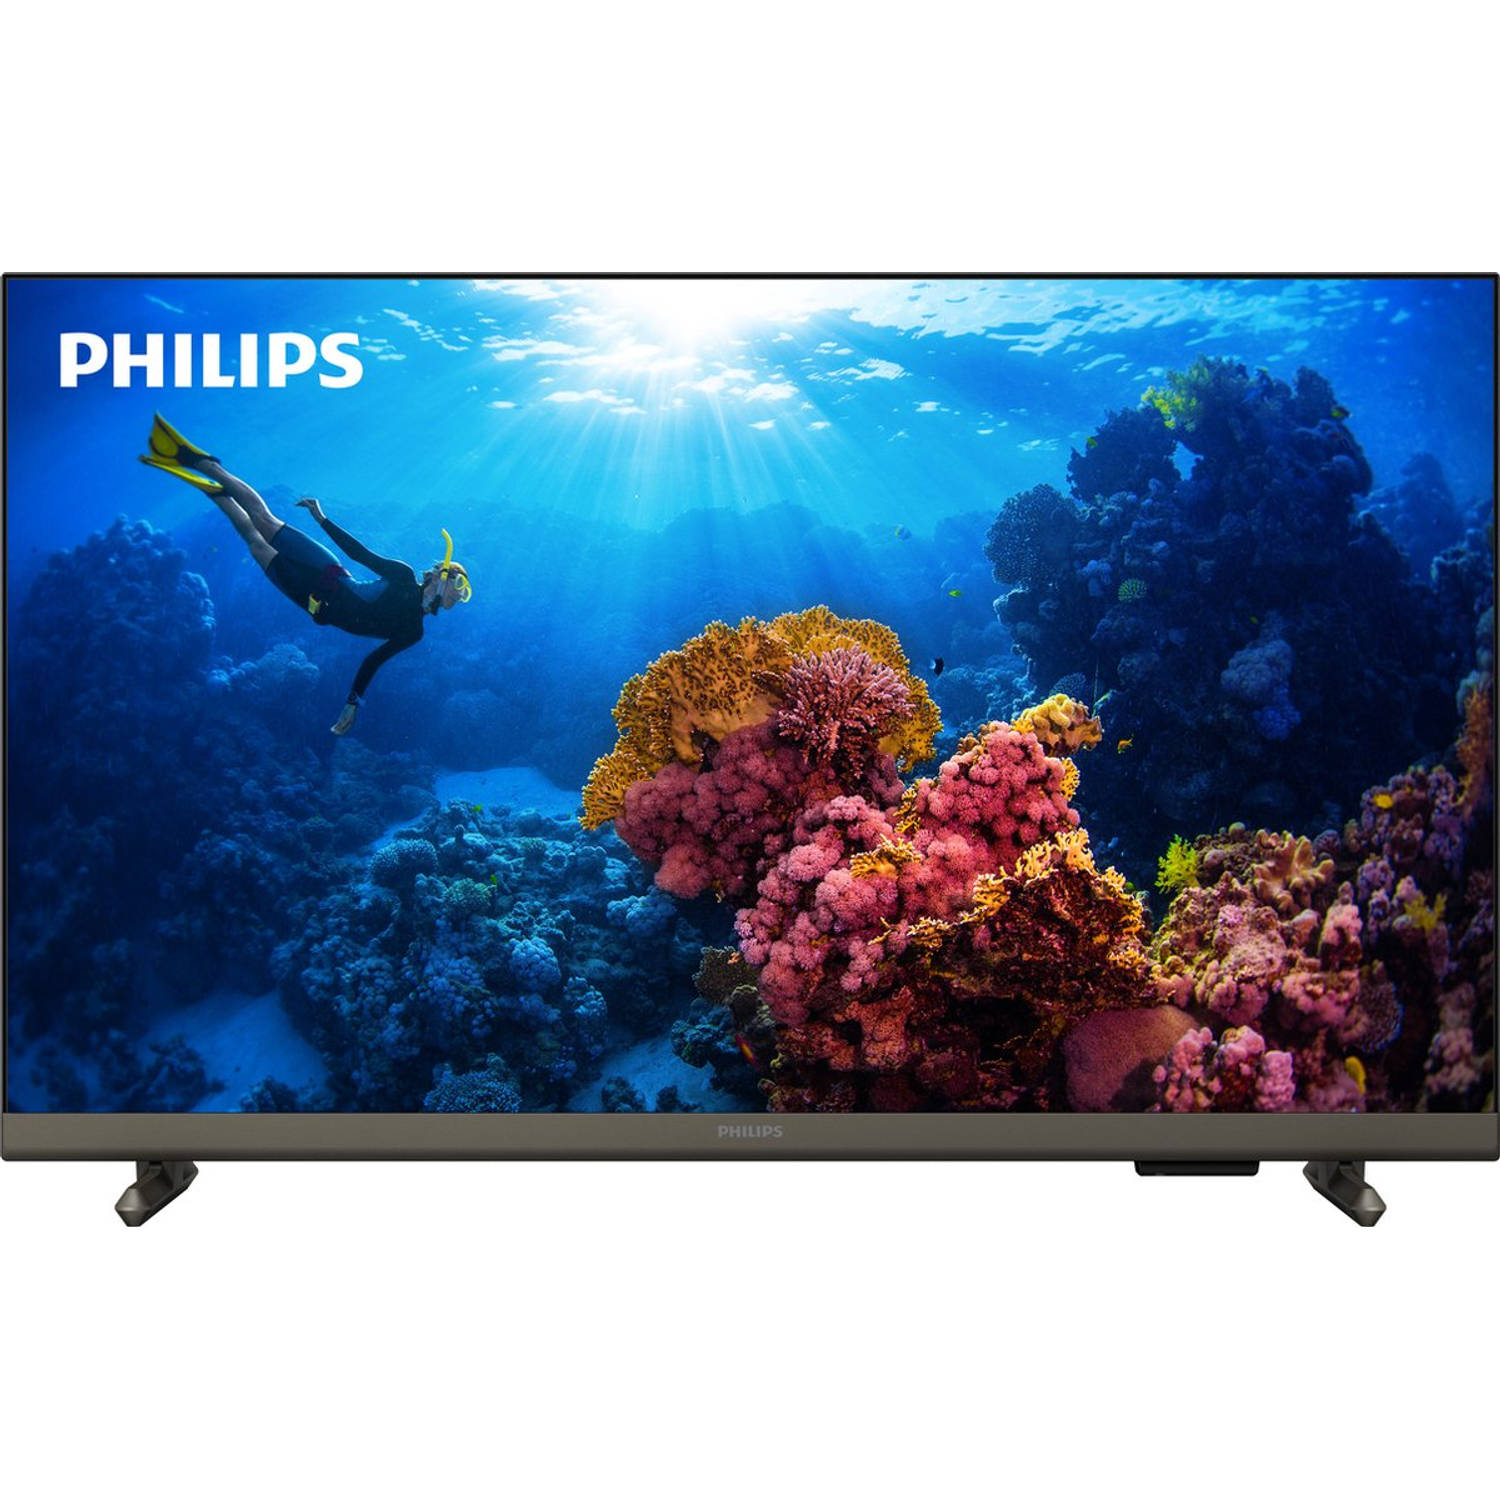 Philips Led-TV 43PFS6808-12, 108 cm-43 , Full HD, Smart TV